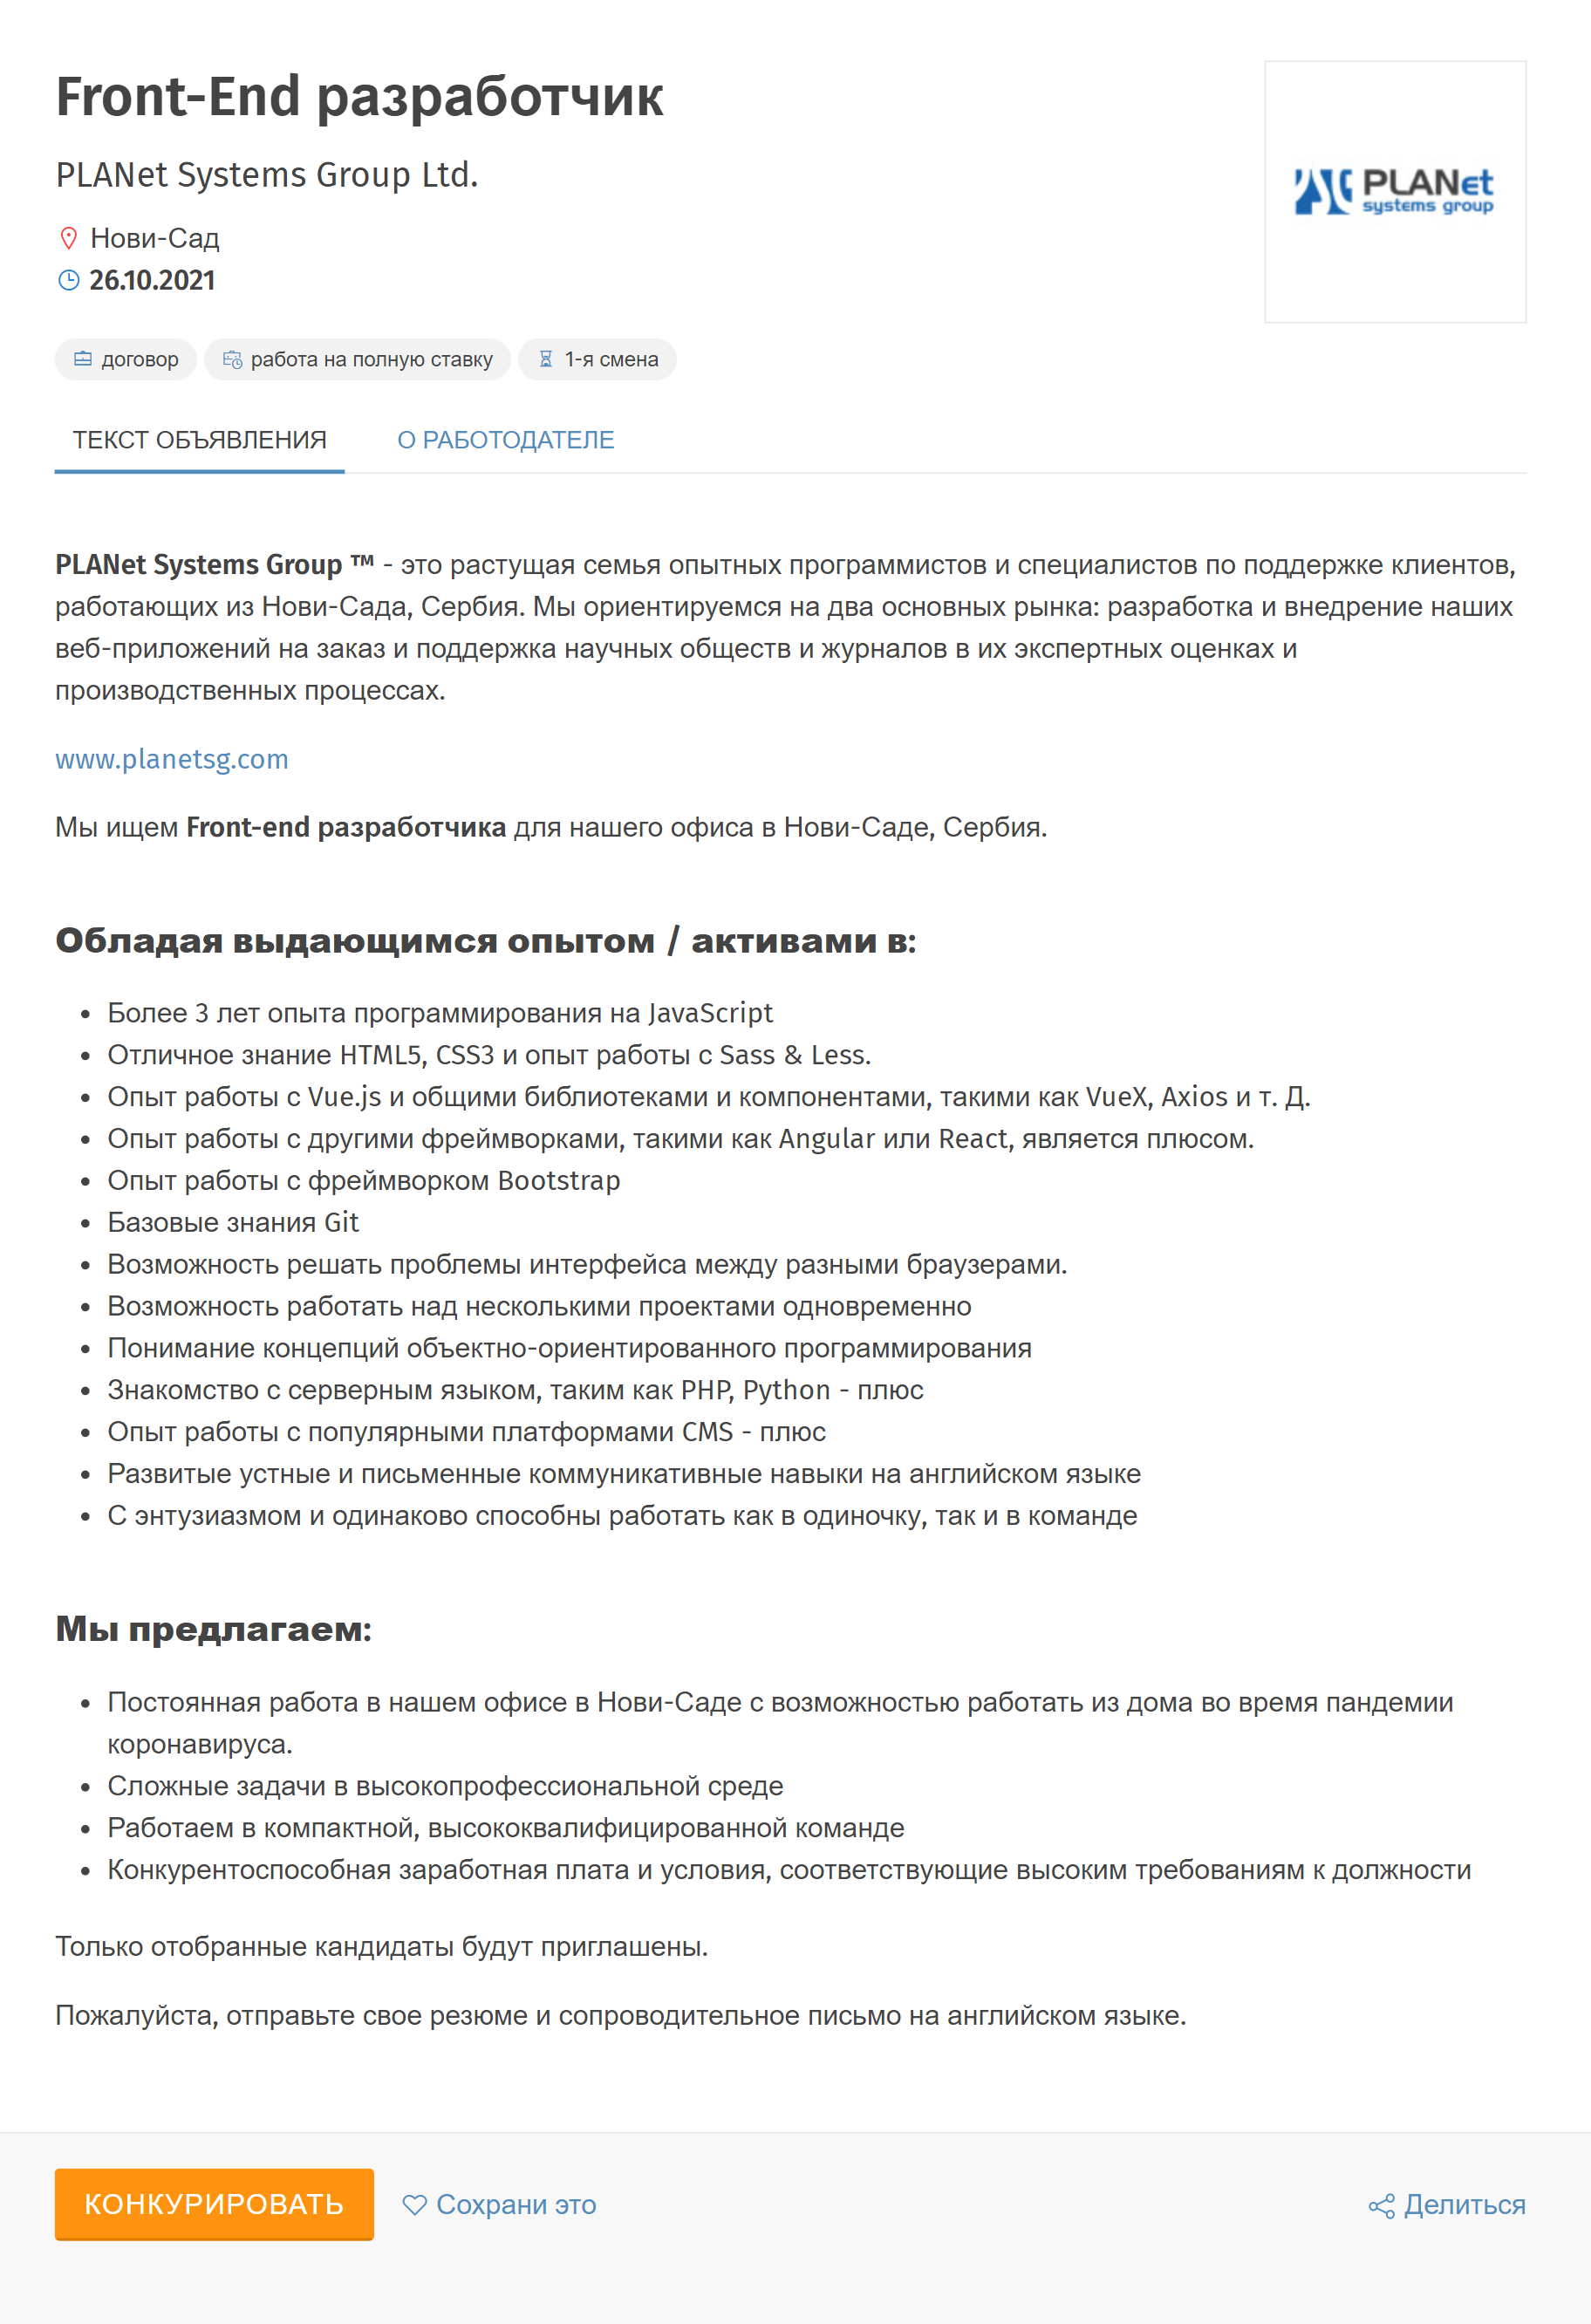 Описание вакансий на сербских сайтах выглядит примерно так же, как в России. Источник: poslovi.infostud.com